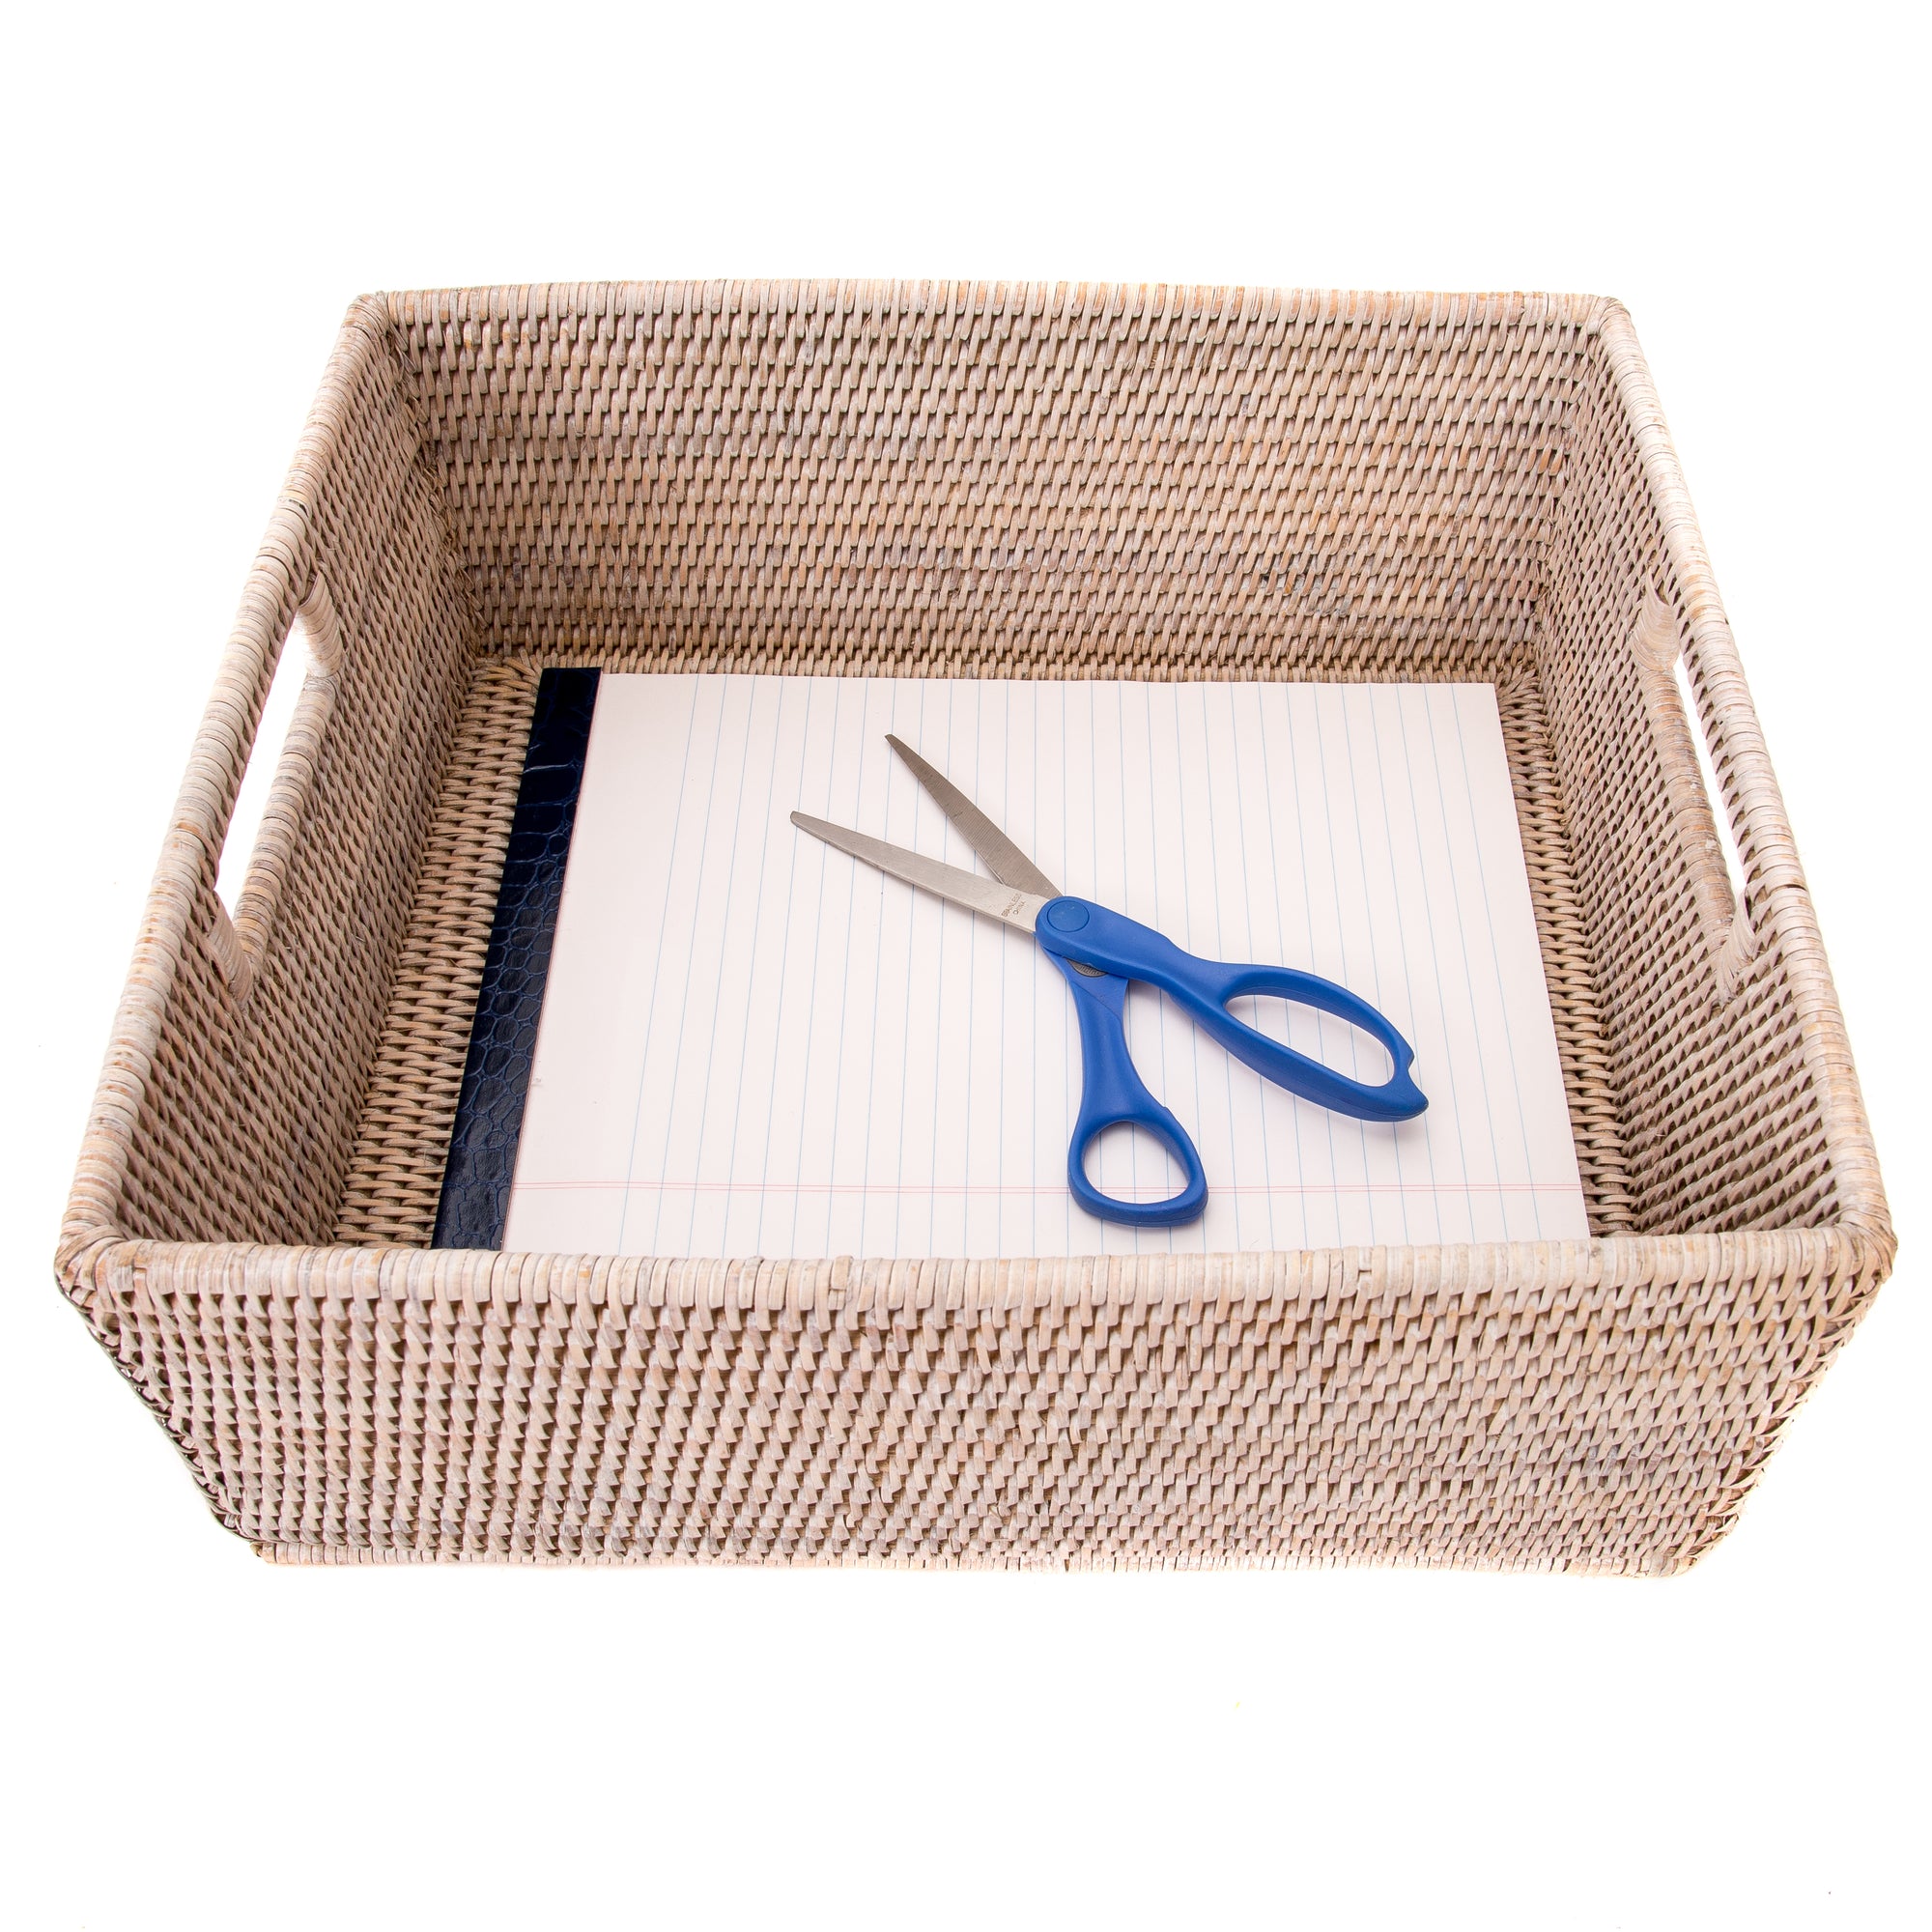 Rectangular Basket with Cutout Handles